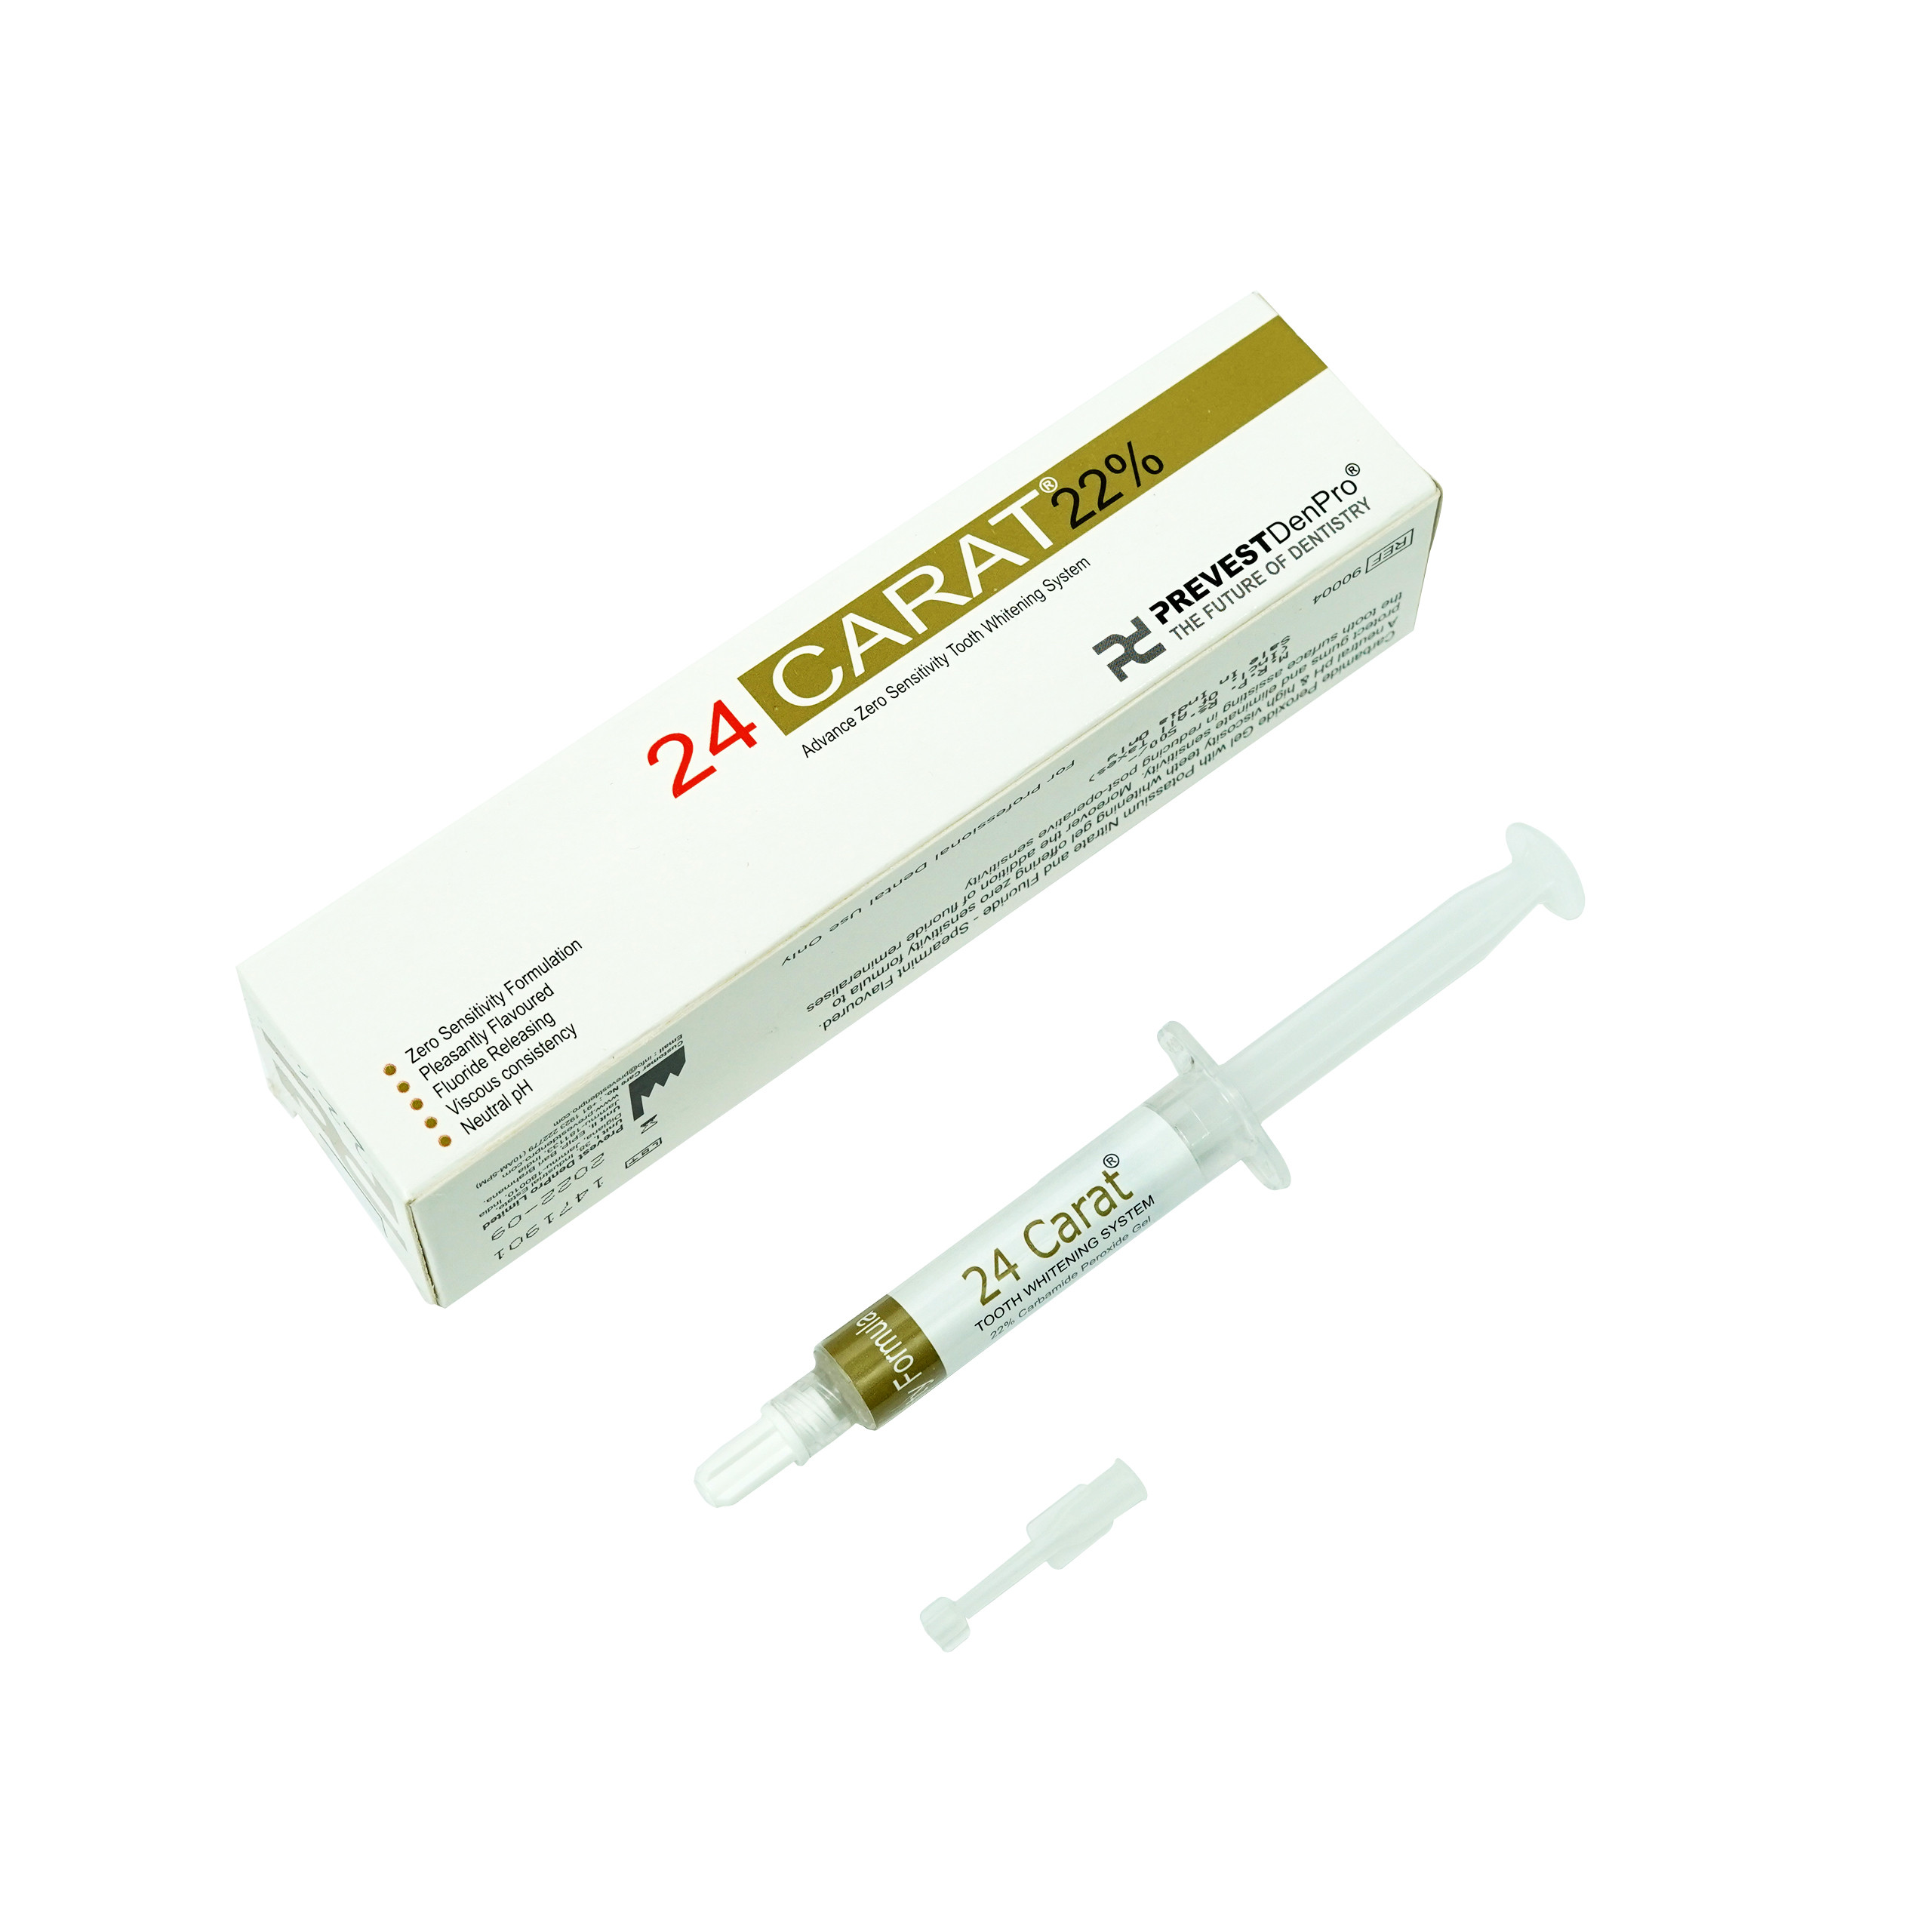 Prevest Denpro 24 Carat 22% Teeth Bleaching 5ml Syringe